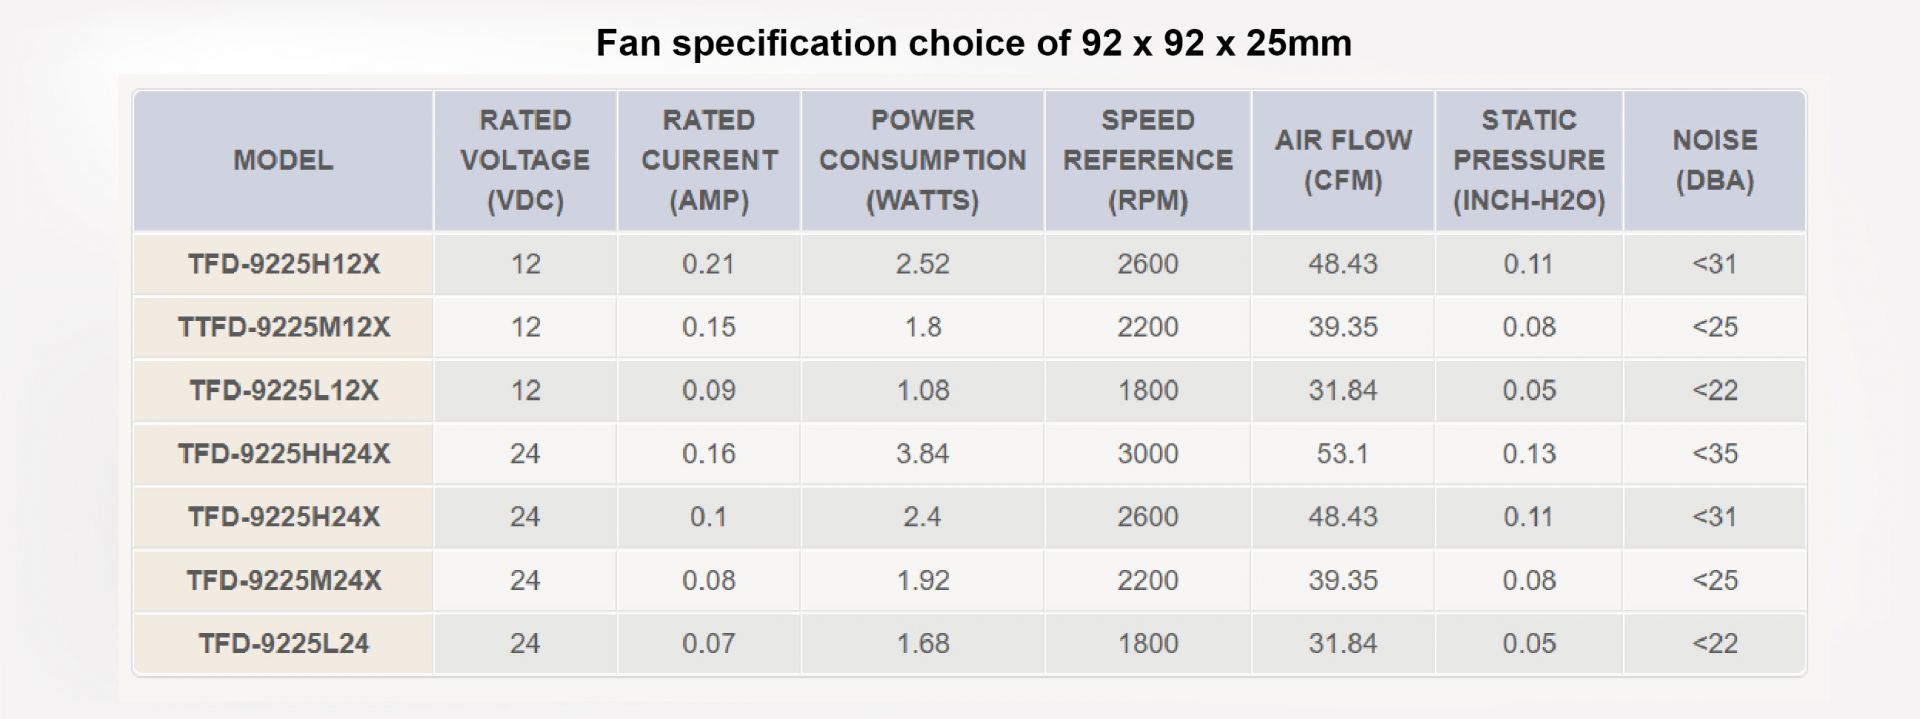 Customize fan specification